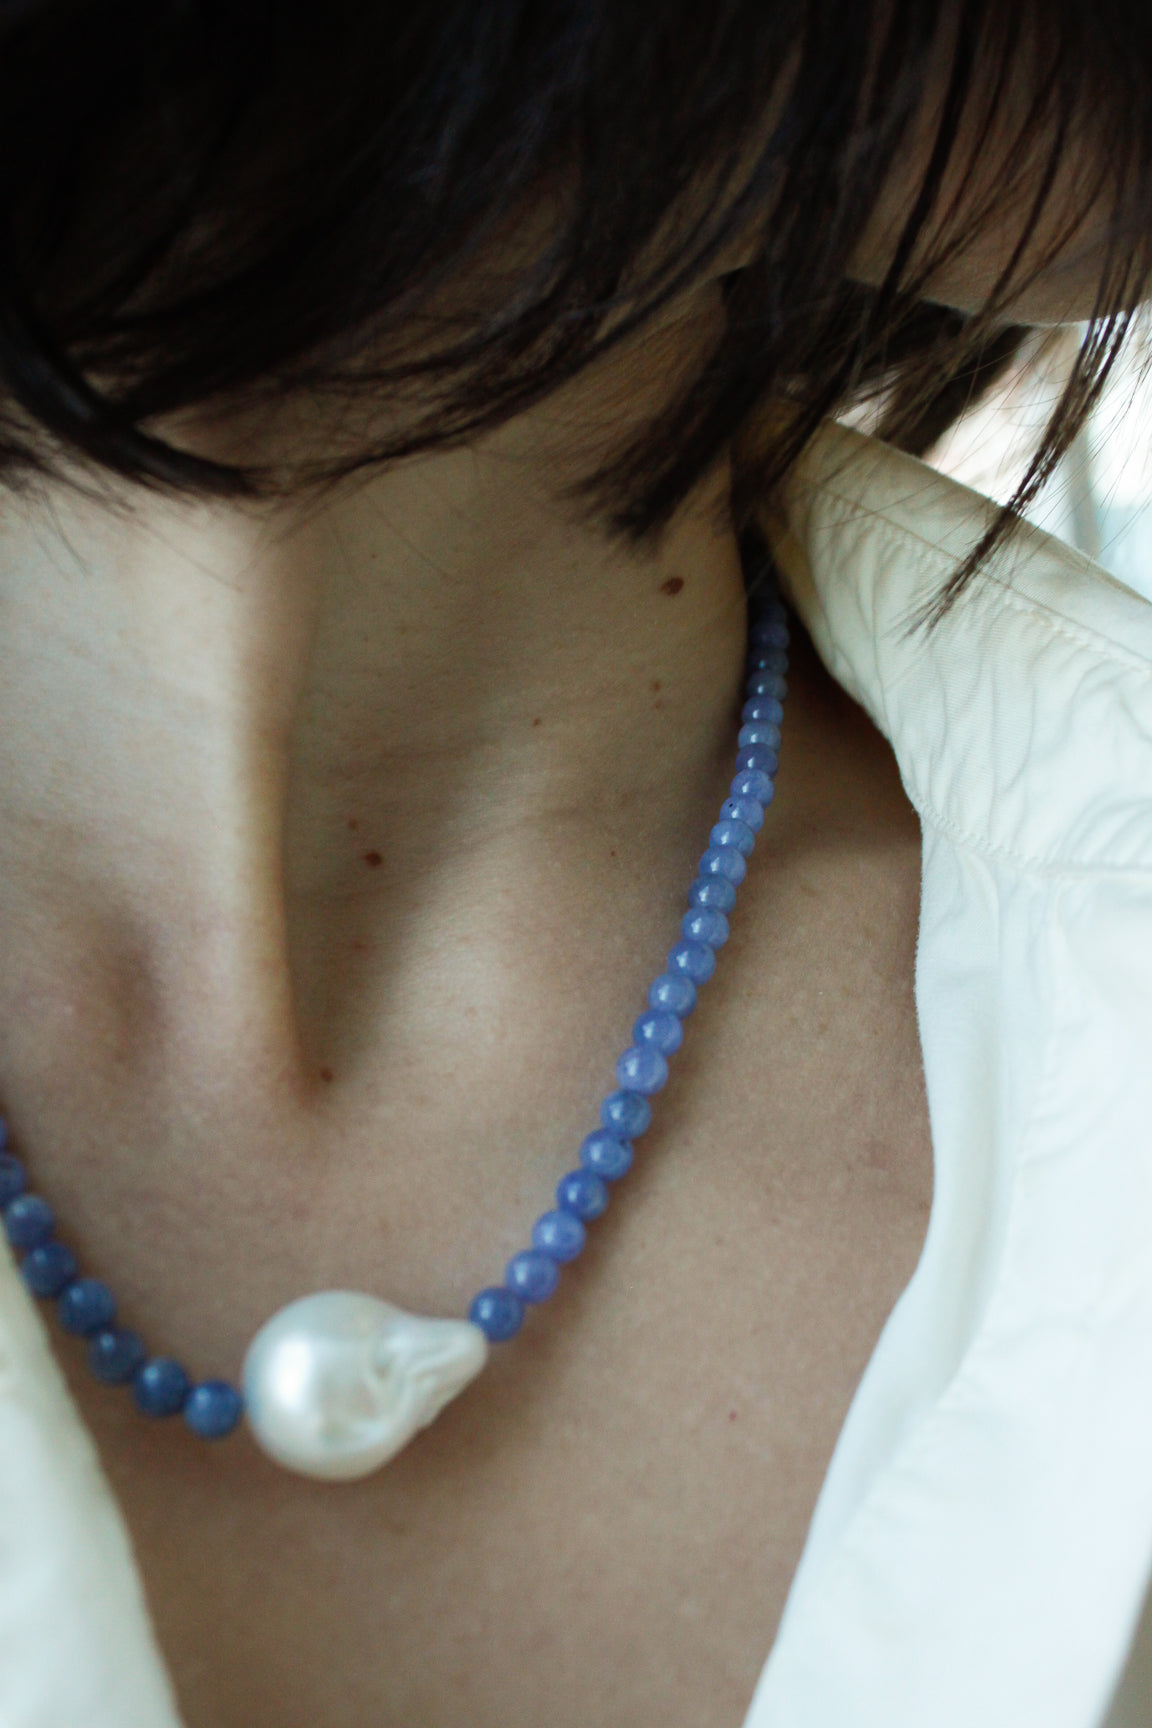 Stone Necklace - Tanzanite + Pearl